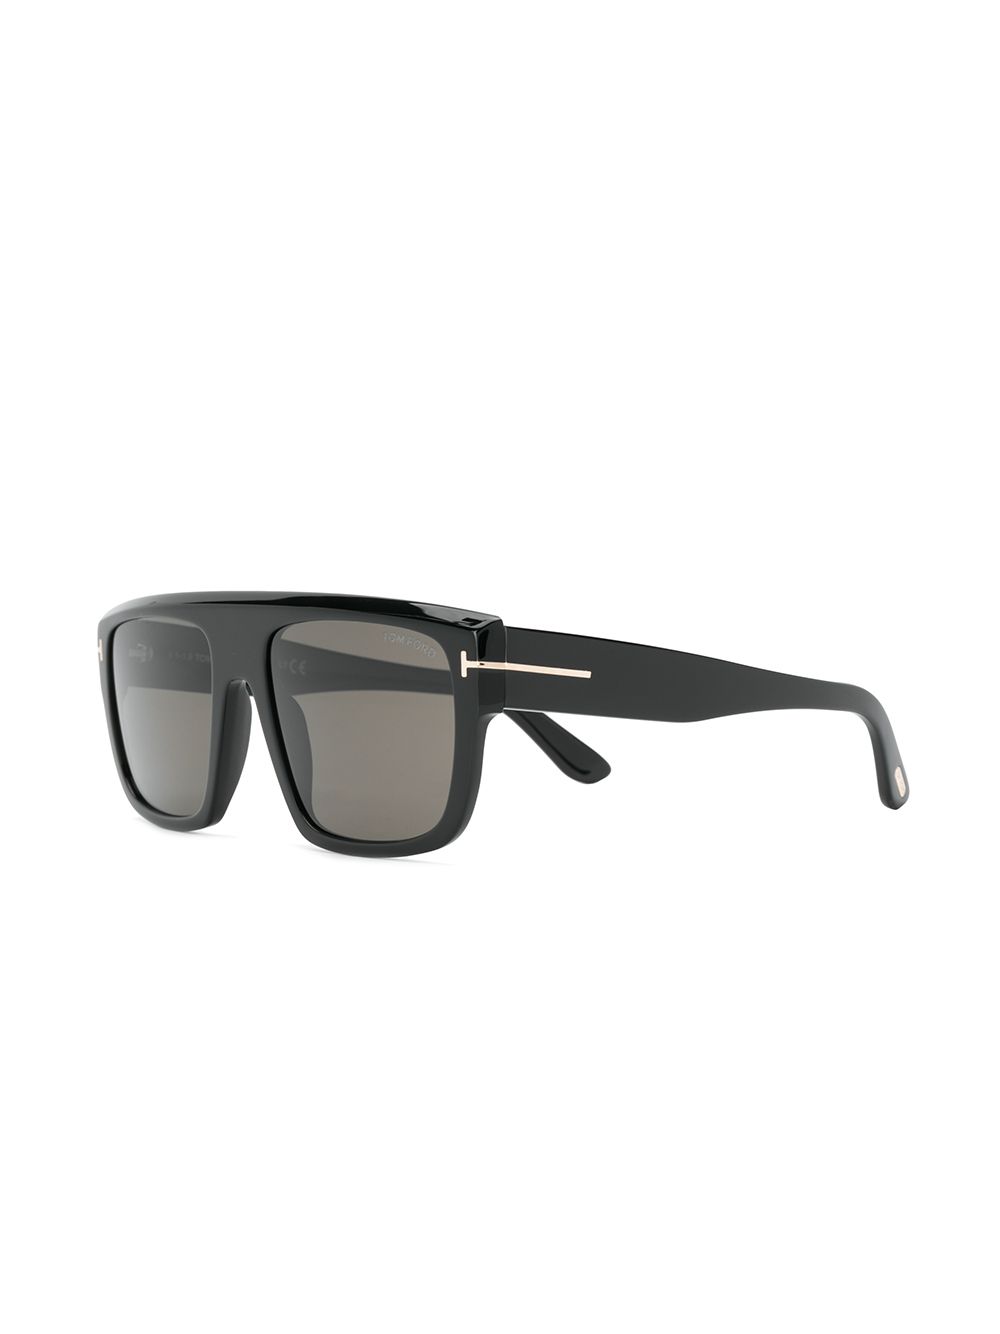 фото Tom Ford Eyewear солнцезащитные очки Alessio в прямоугольной оправе